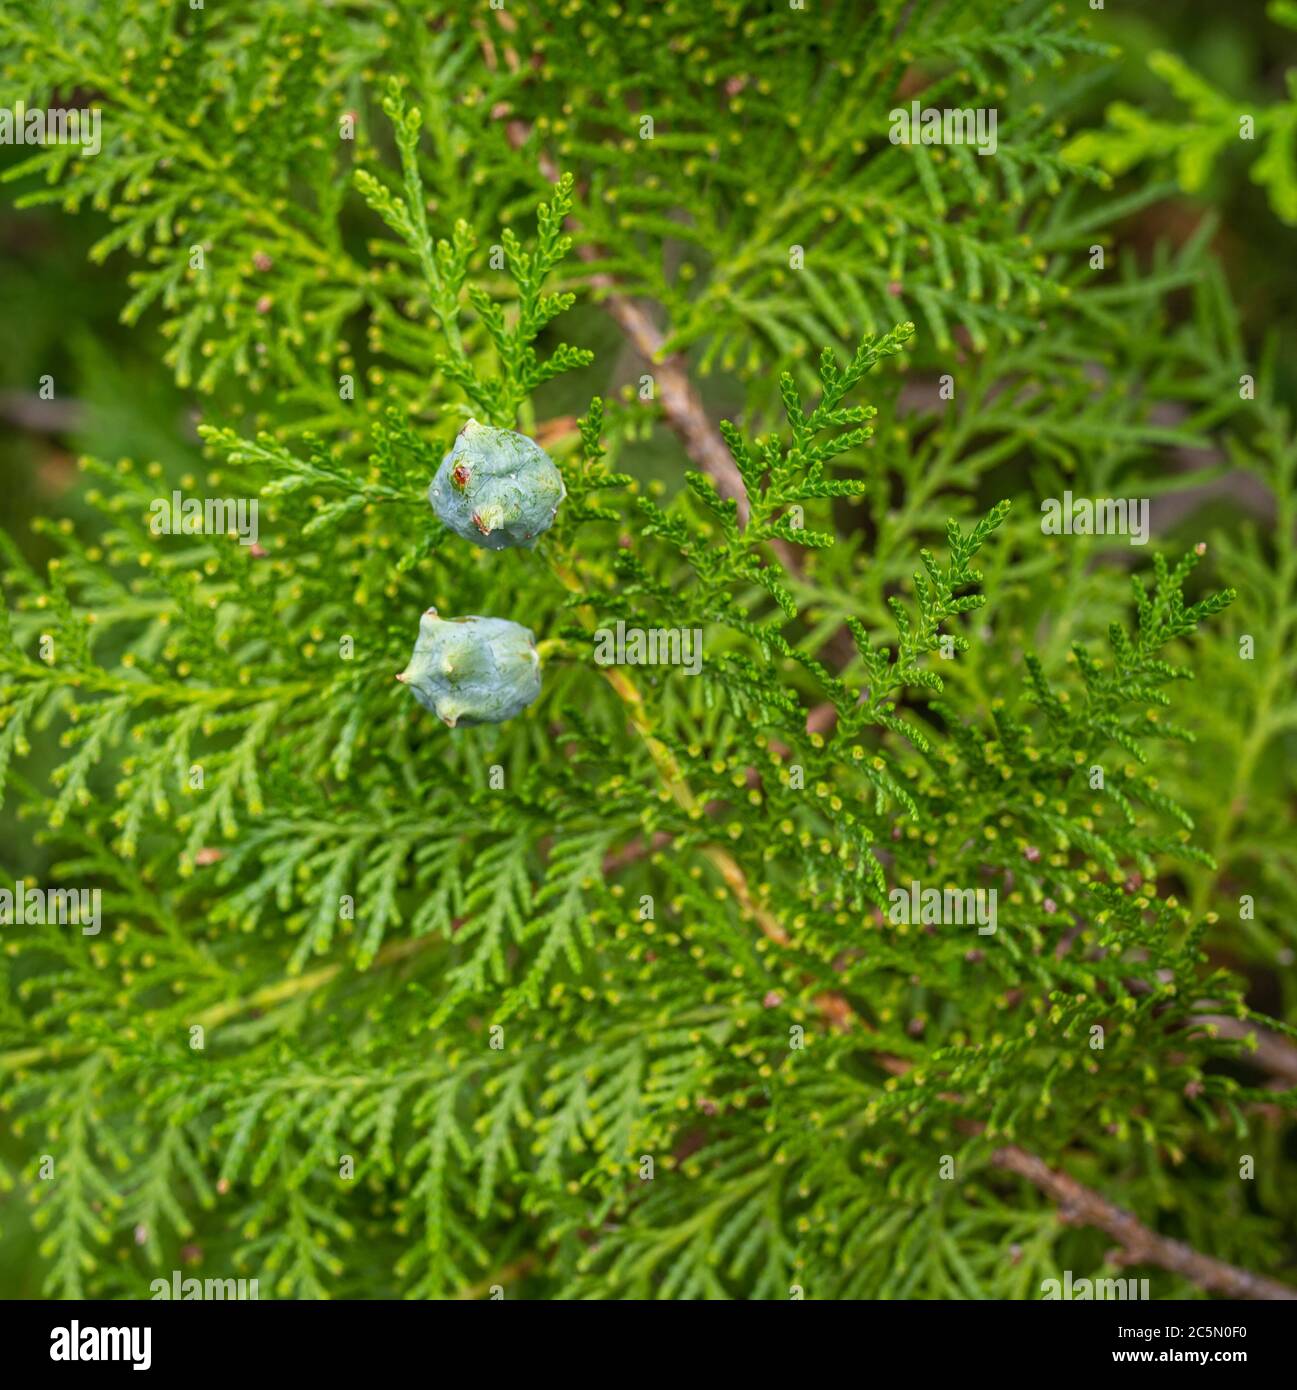 Arborvitae chinois (Platycladus orientalis), branche avec des cônes Banque D'Images